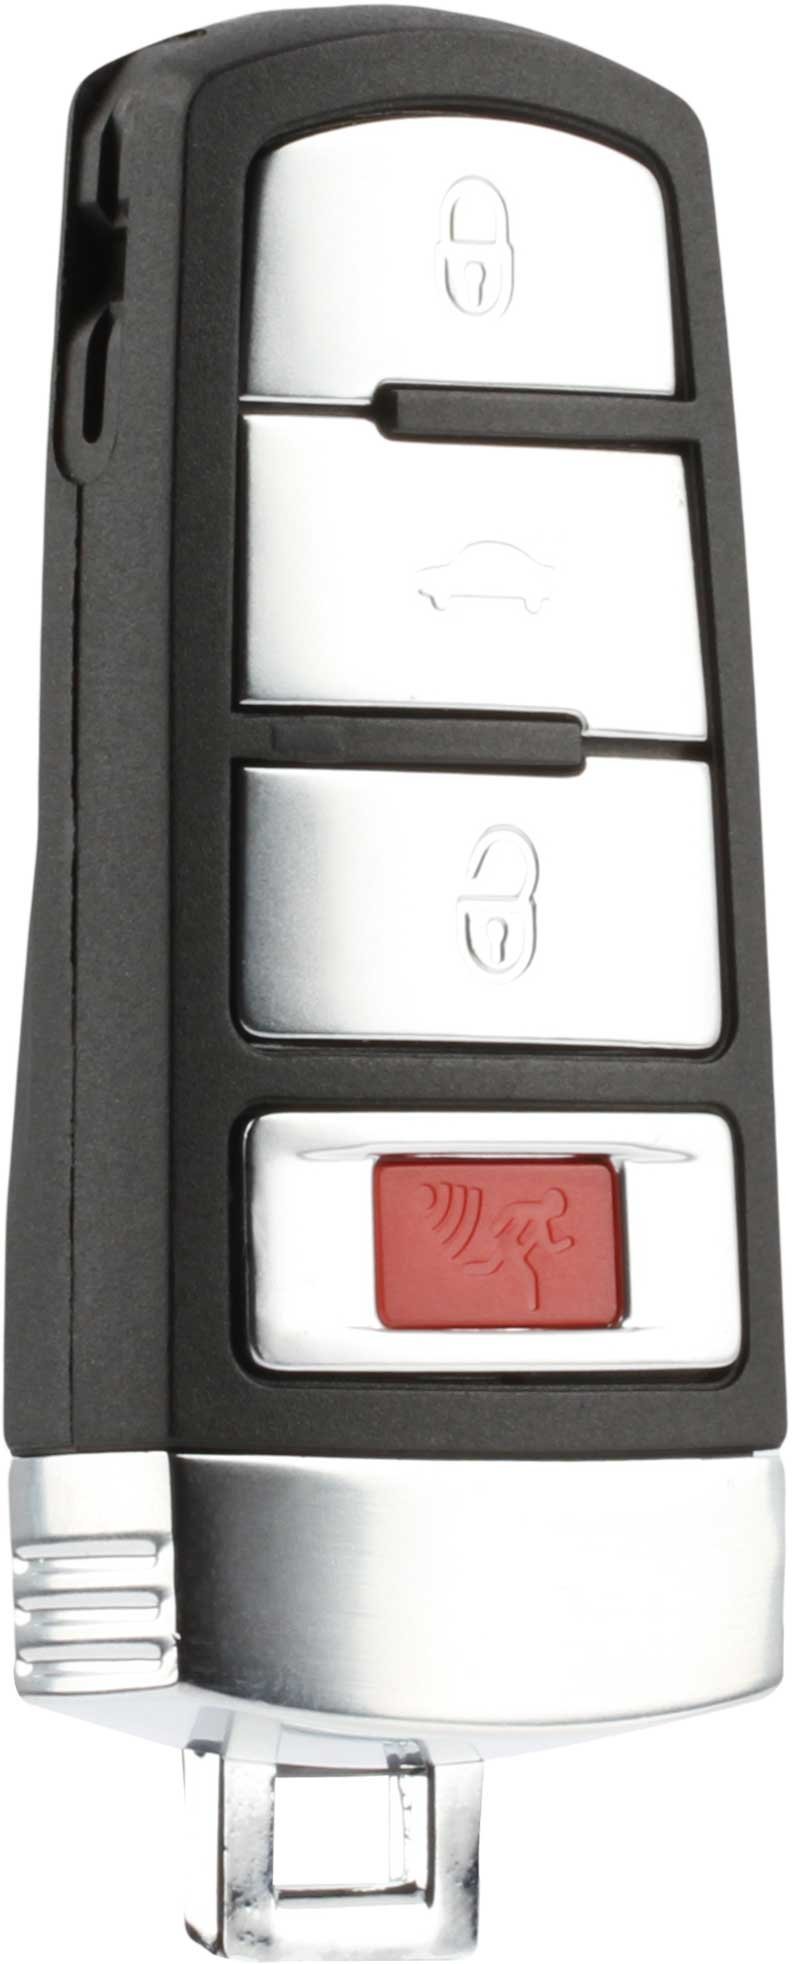  [AUSTRALIA] - Smart Key Fob Keyless Entry Remote Shell Case & Pad fits 2006-2010 VW Passat (HLO3C0959752N) v-pass-smrt-case